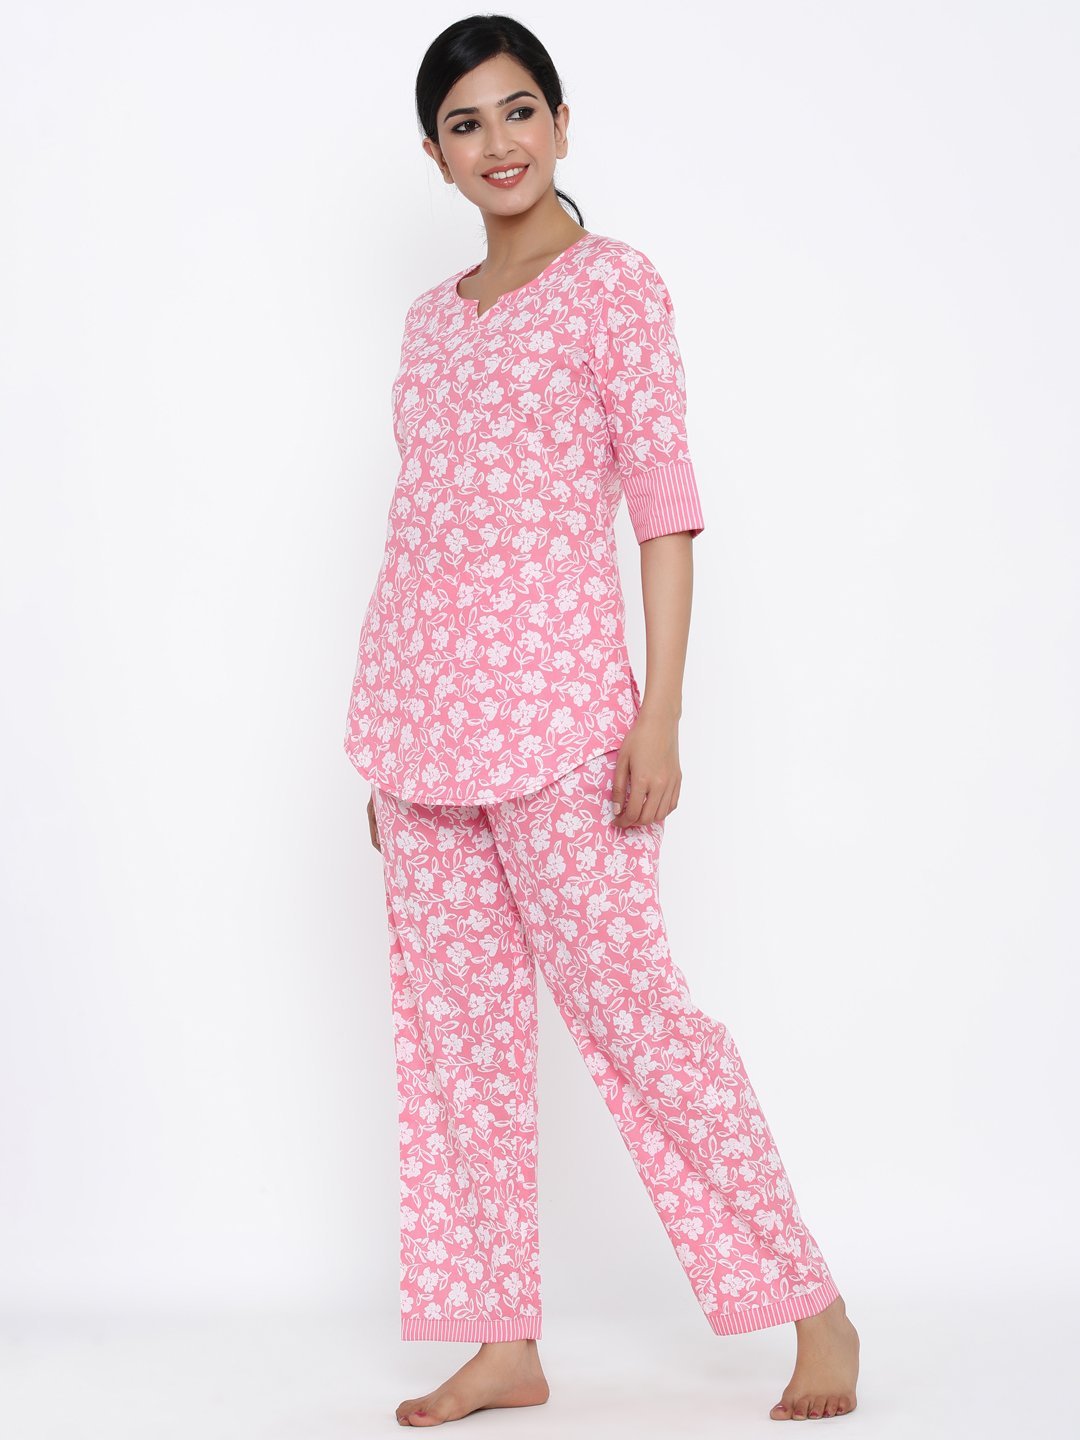 Women's Pink Printed Cotton Night Suit by Kipek (2 Pc Set)